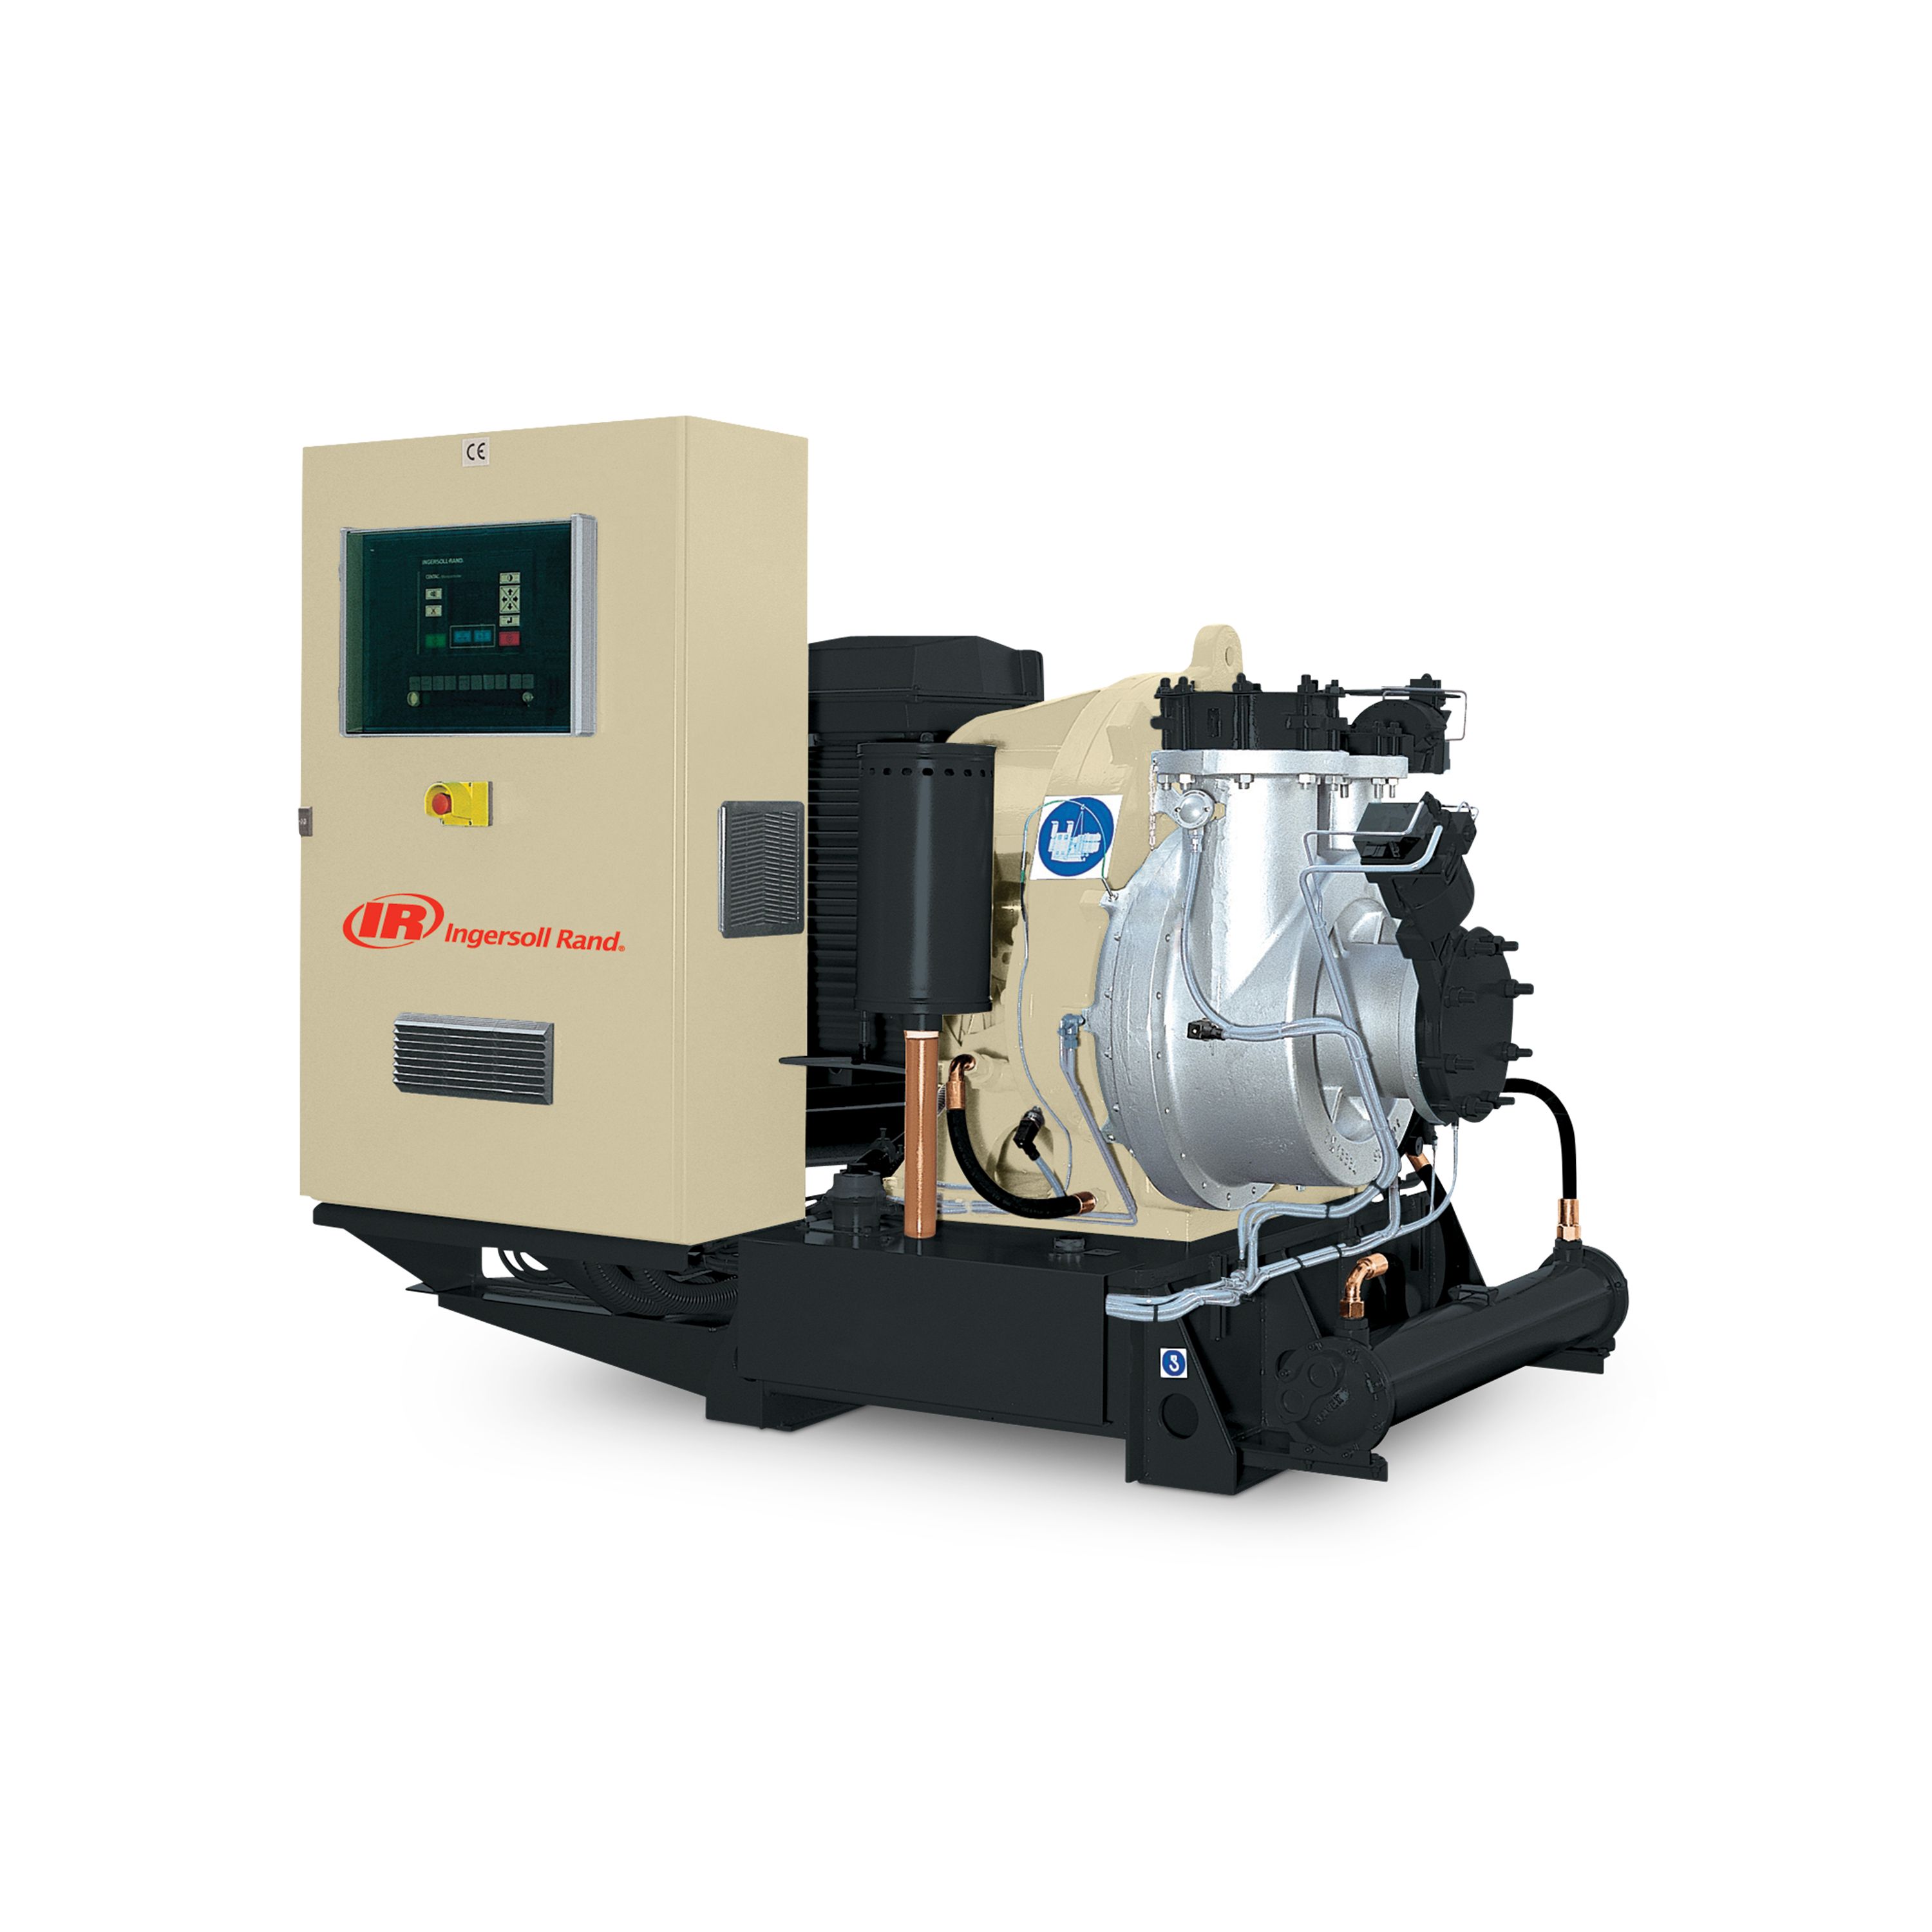 Centac Centrifugal Low Pressure Compressor